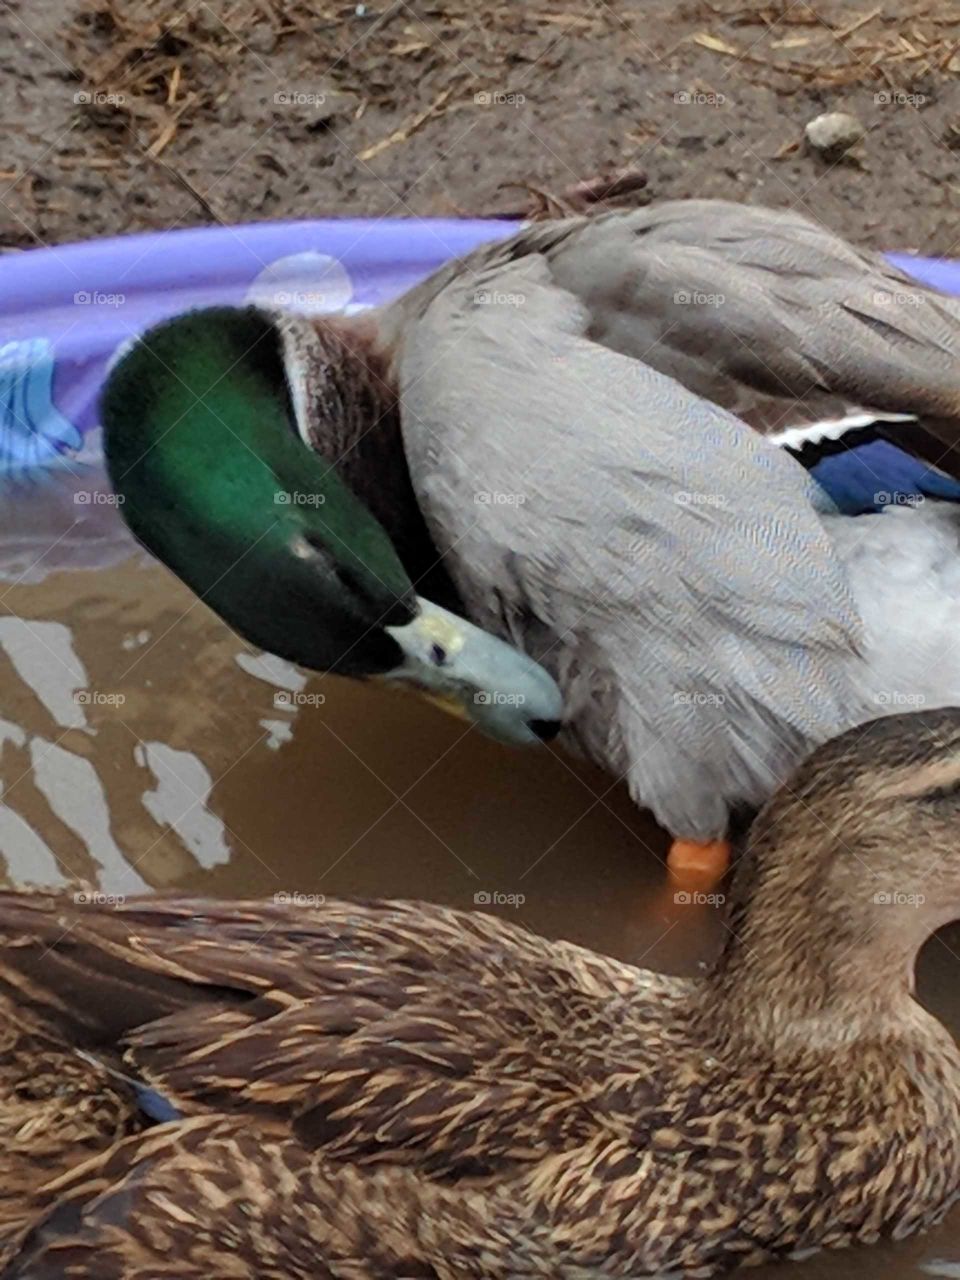 local duck found a pool! So cute!